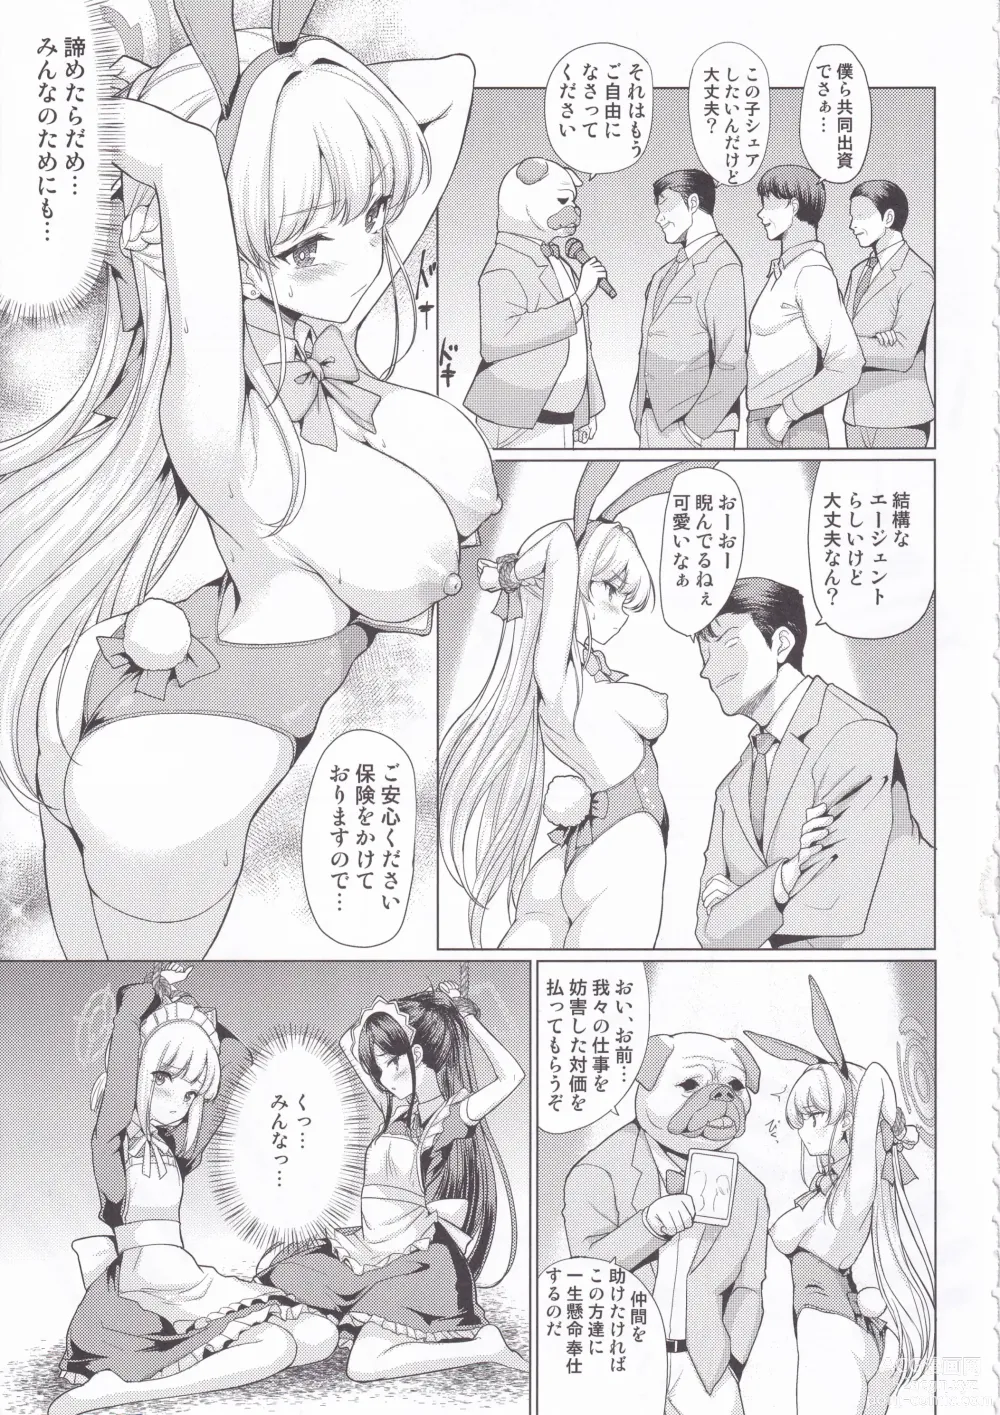 Page 6 of doujinshi Dokidoki Toki Auction